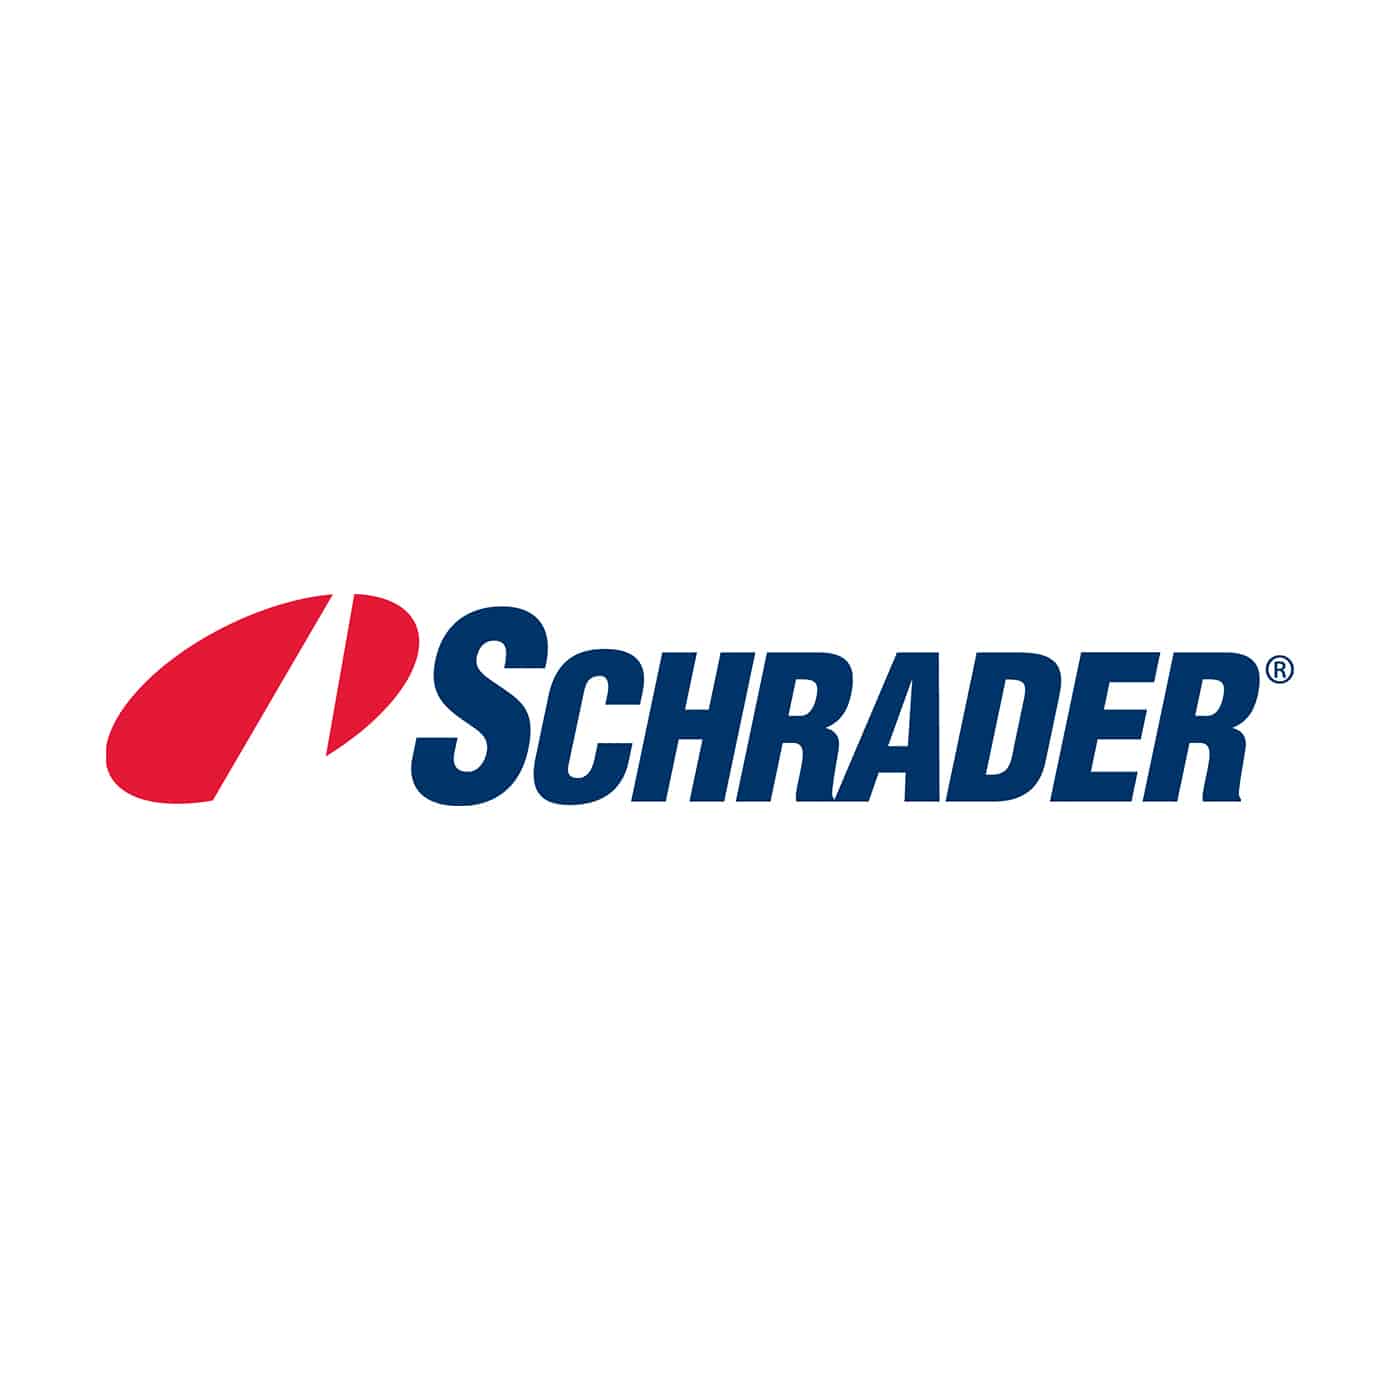 Schrader RDKS Logo